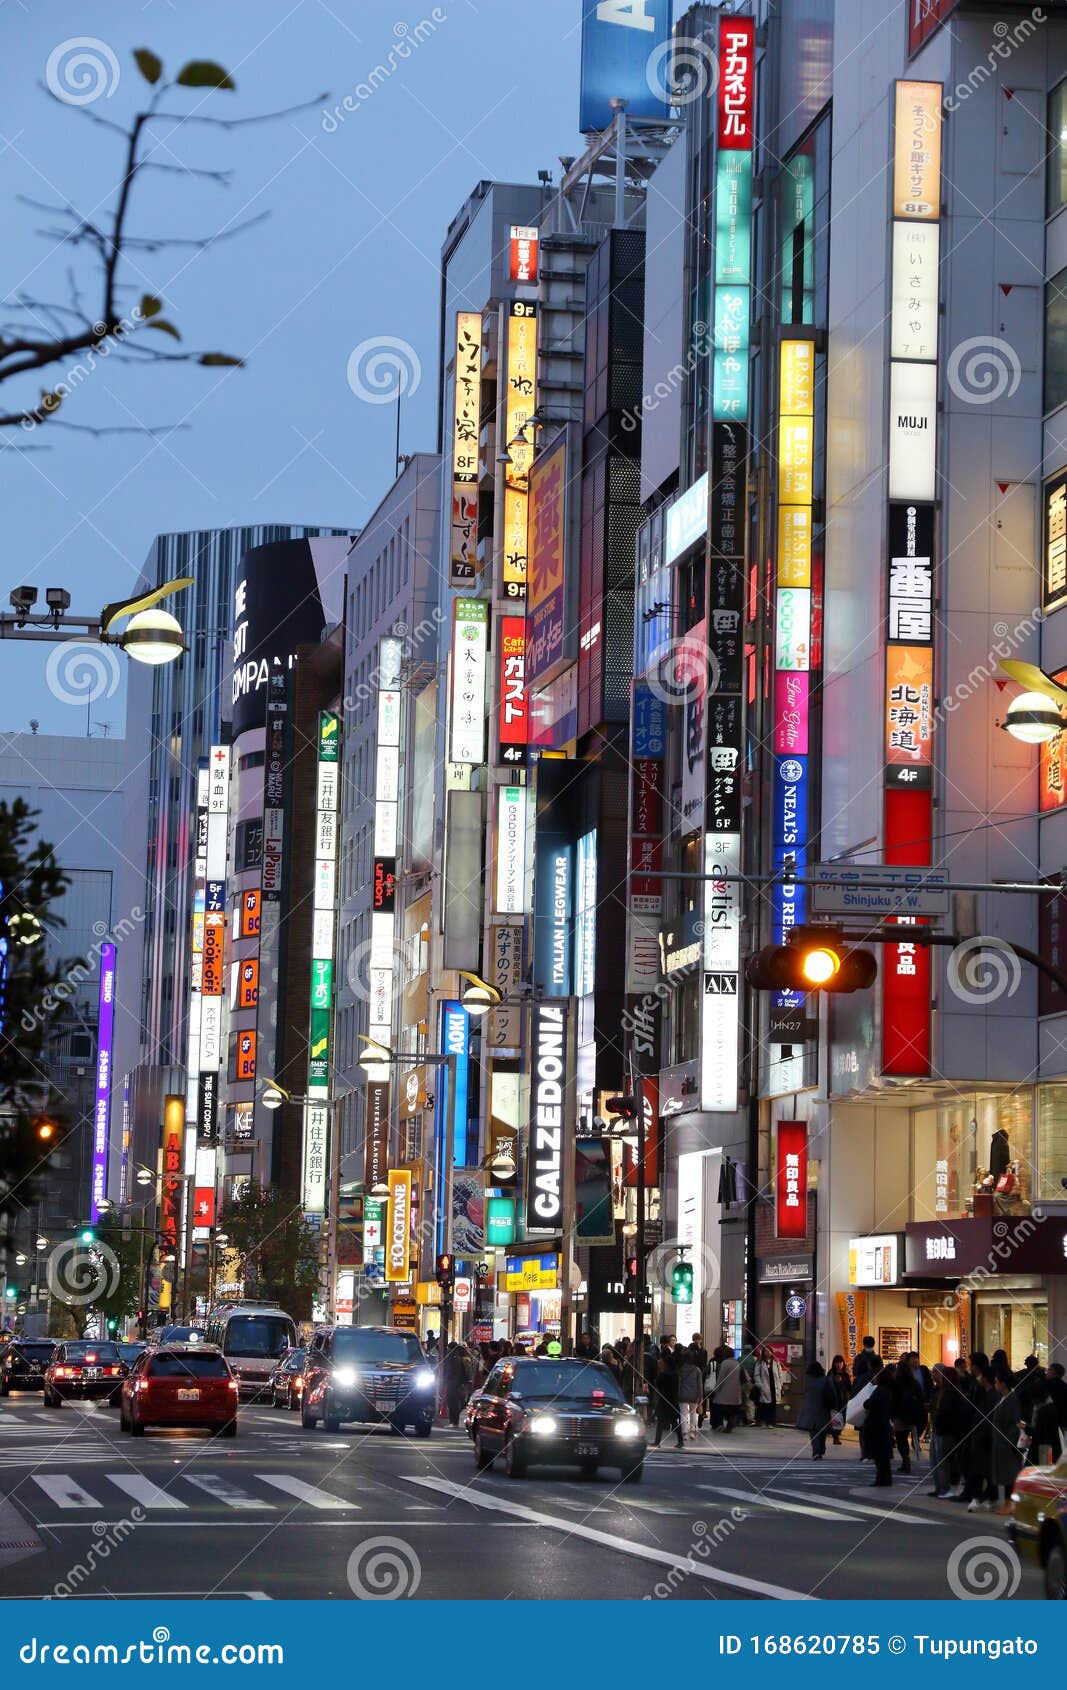 Shinjuku Ward Tokyo Editorial Image Image Of Travel 168620785